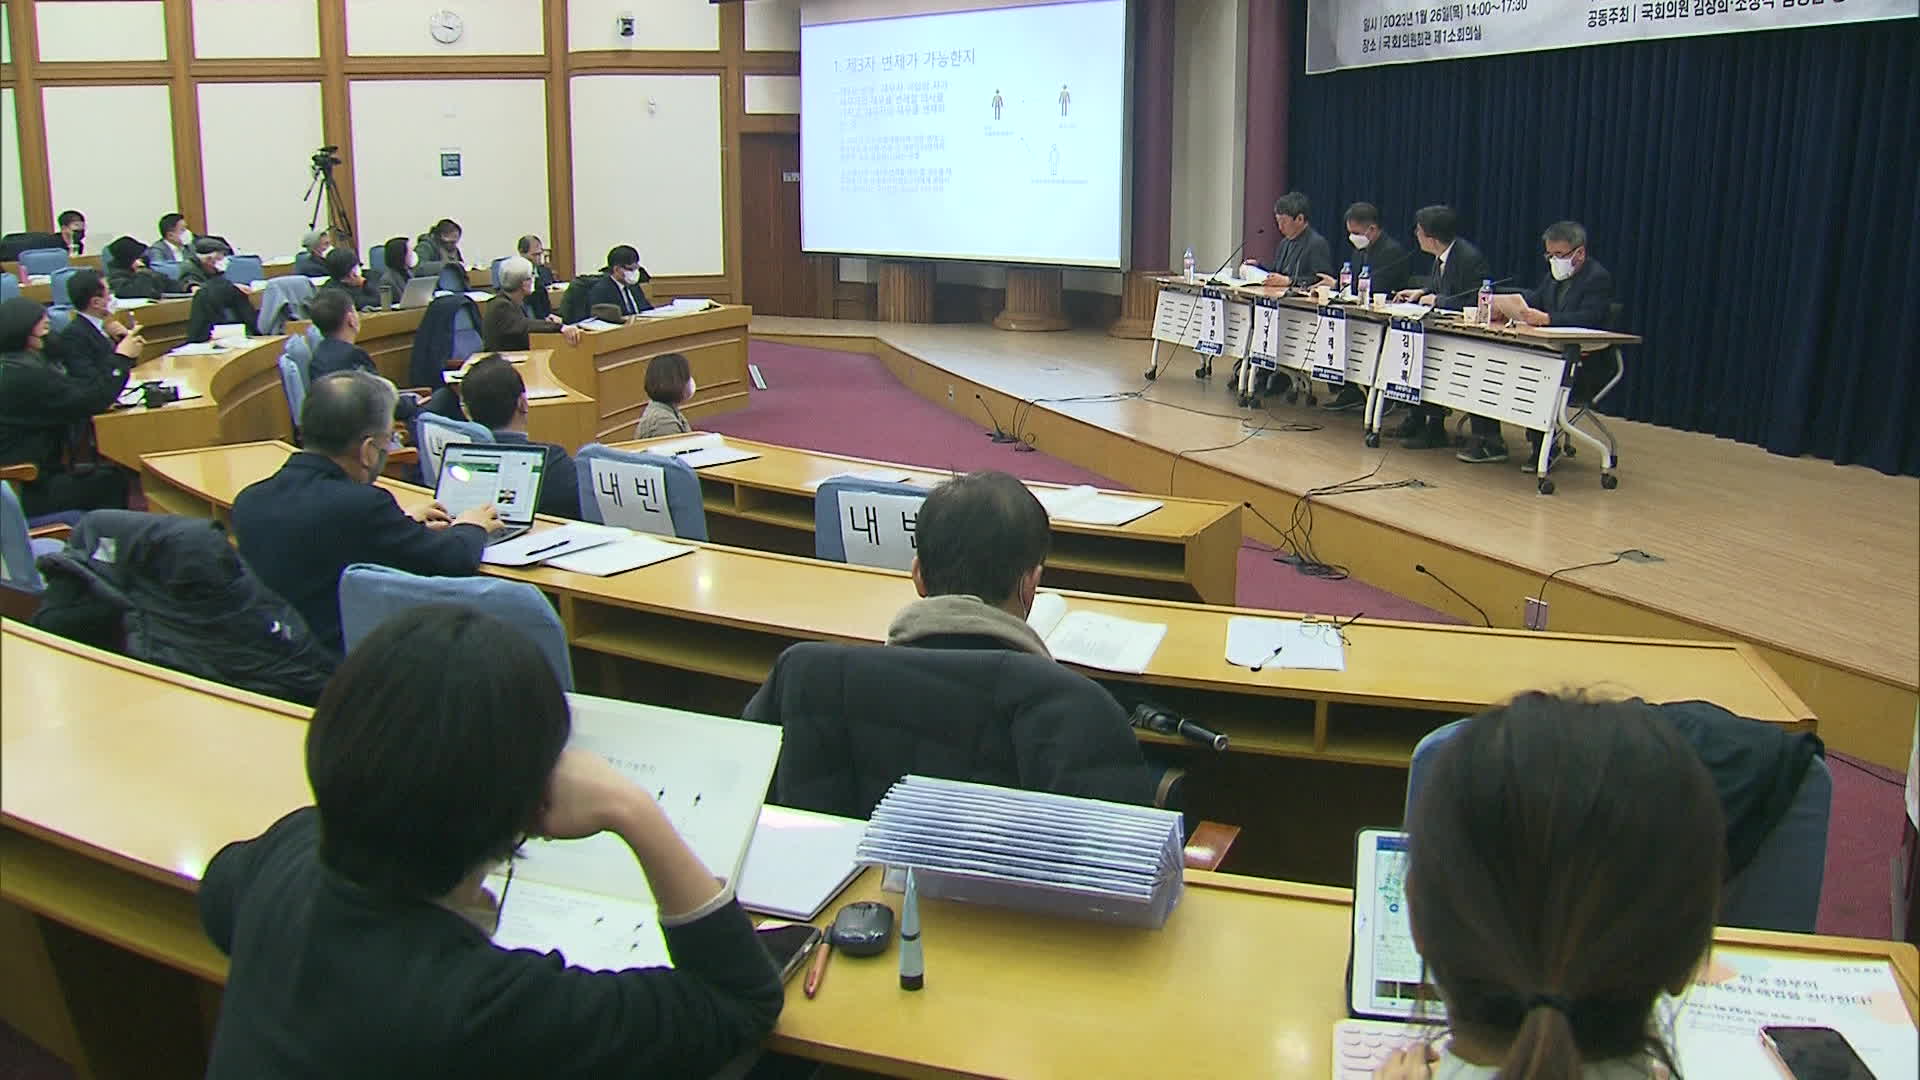 ‘한국 정부의 강제동원 해법을 진단한다’ 토론회에서 강제동원 피해자 측과 법조계, 학계 인사들이 발표하고 있다.